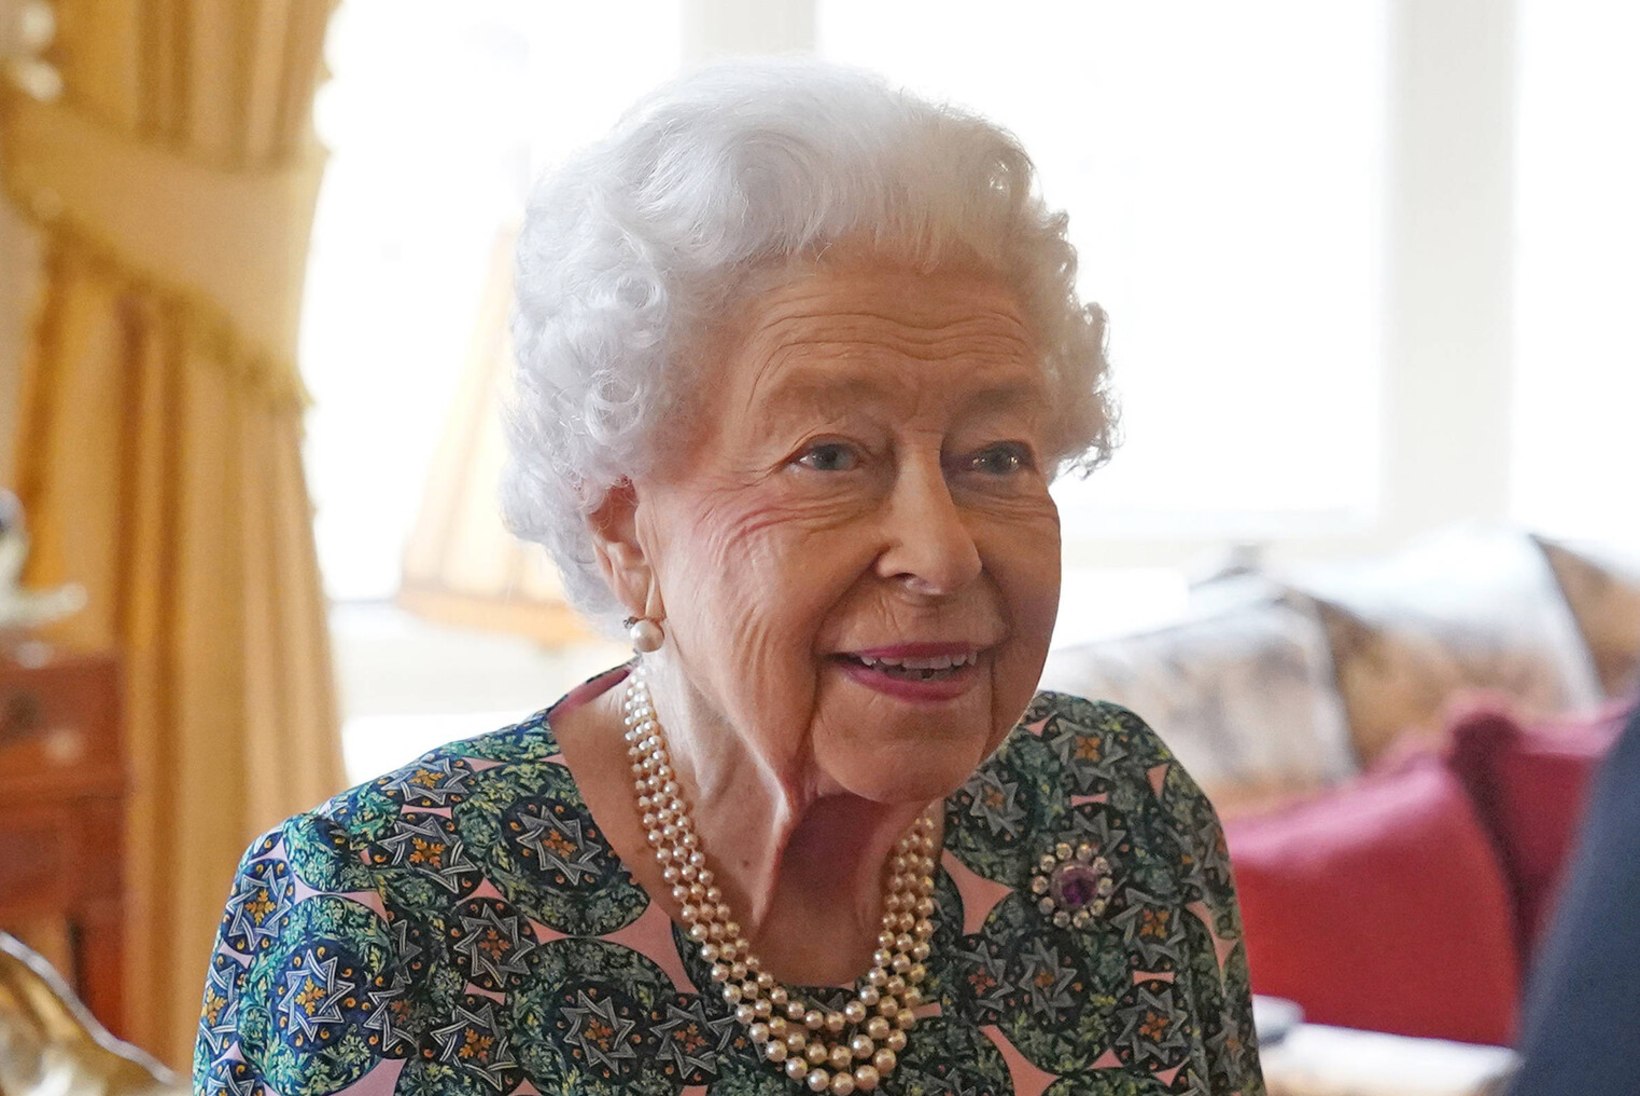 Kuninganna Elizabeth II kurtis terviseprobleemi üle: ma ei saa liikuda